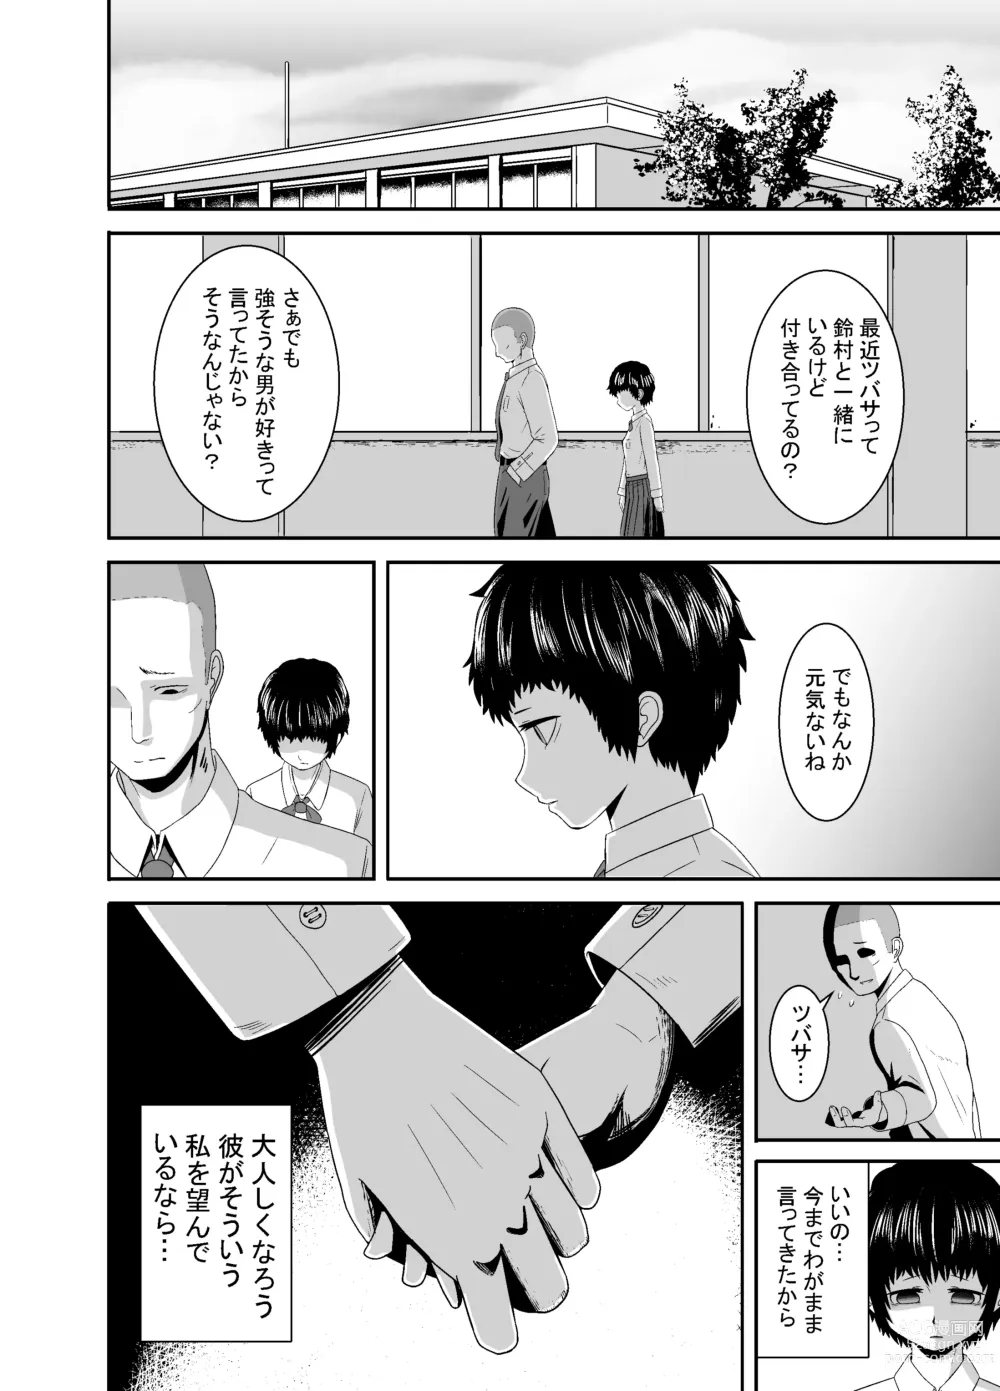 Page 55 of doujinshi Kimi ga Yarareru Kurai nara ~Genkikko Crisis~